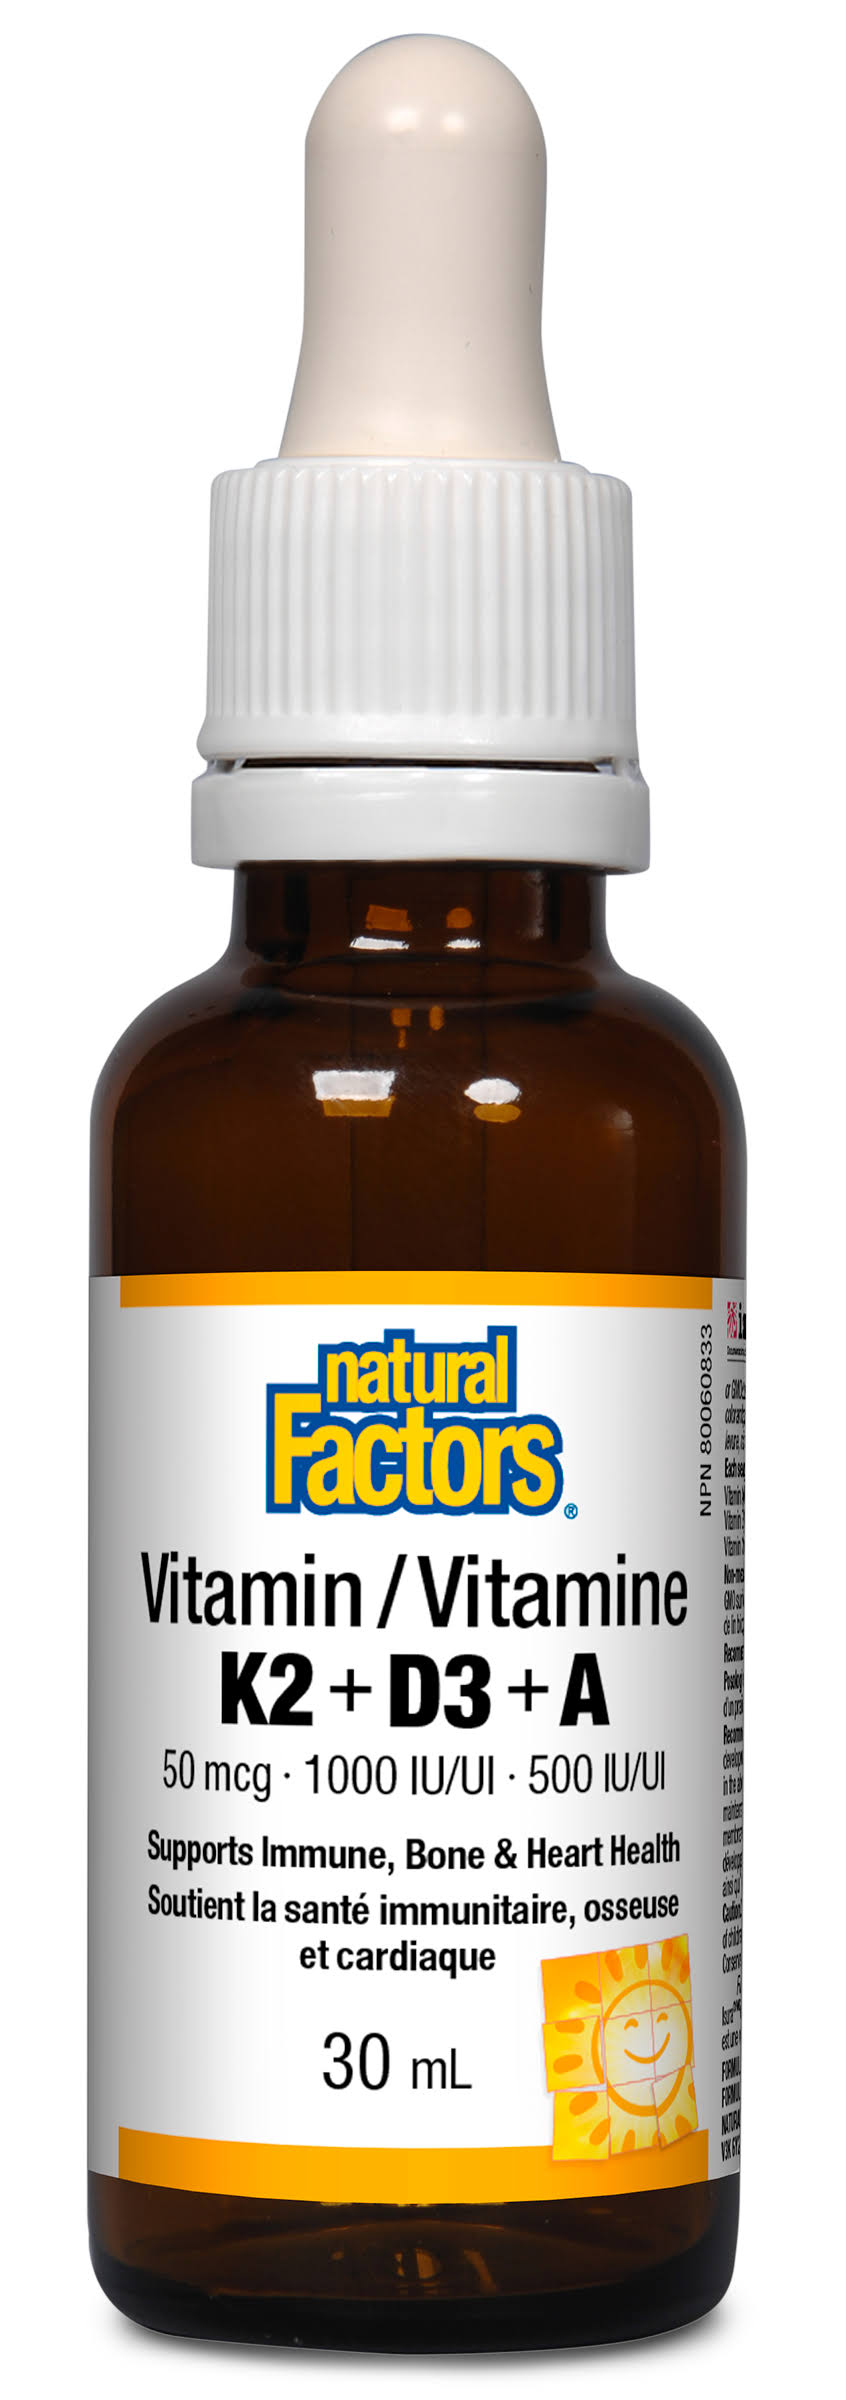 Natural Factors Vitamin K2+D3+A 50 mcg · 1000 IU · 500 IU - 30ml